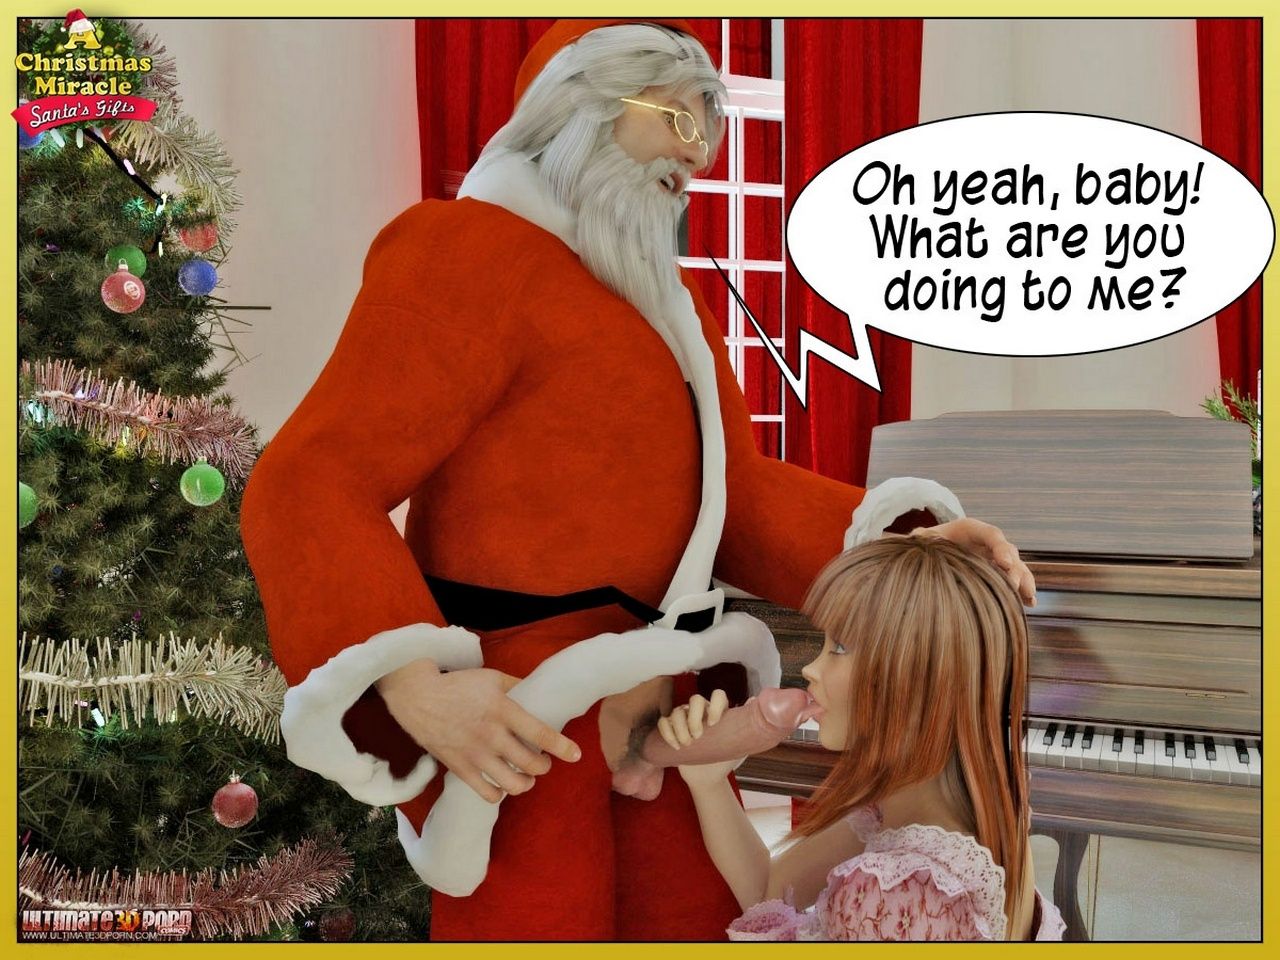 bir Noel mucize 2 - Noel babalar hediye - PART 3